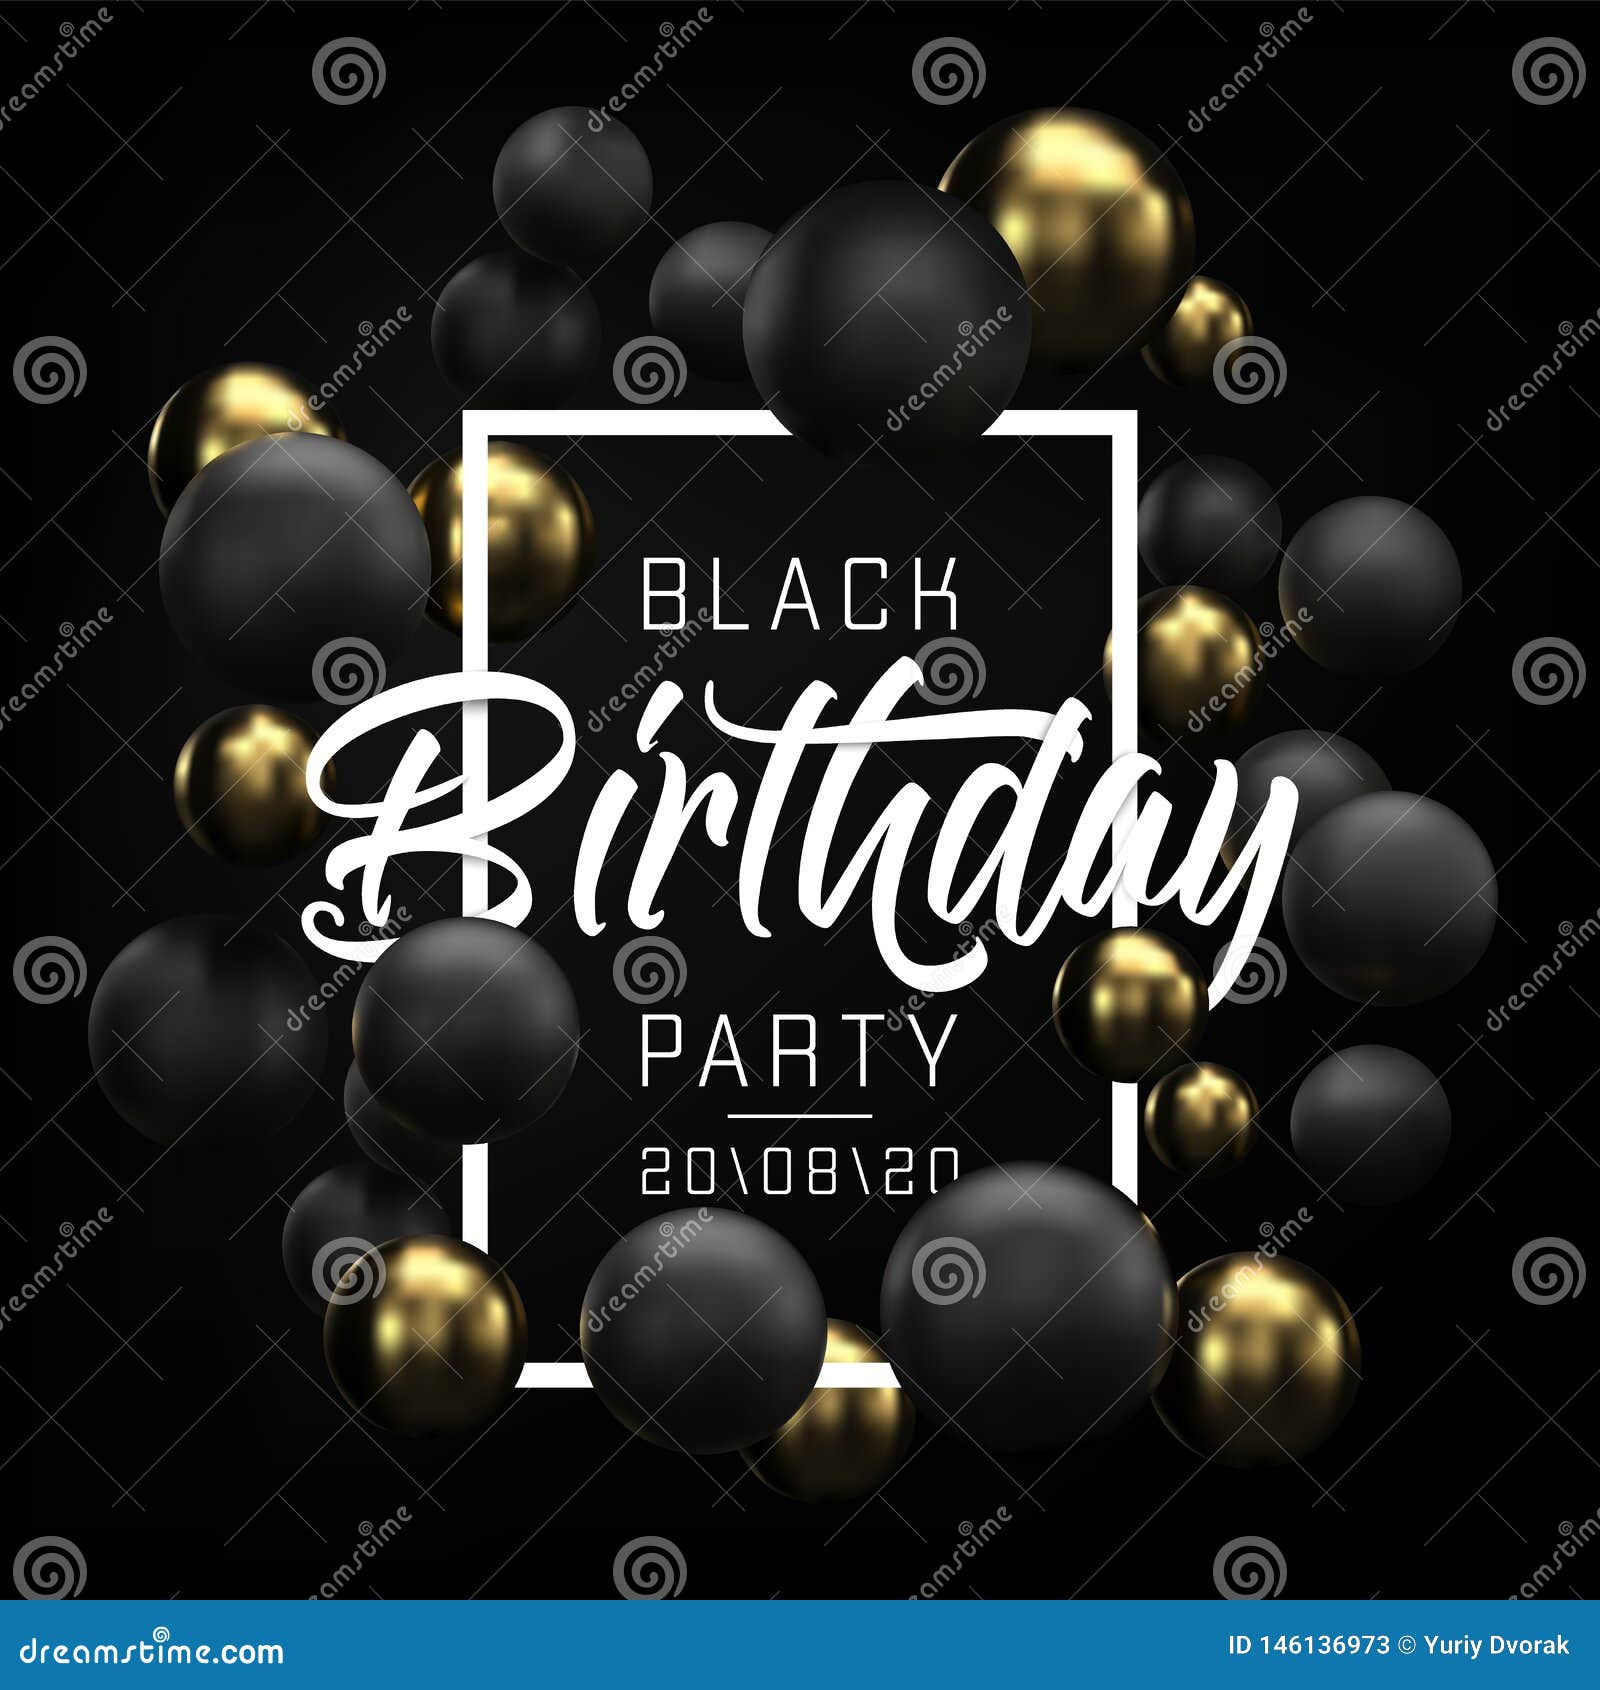 Chúc mừng sinh nhật! Với thiết kế banner đen và vàng lộng lẫy, chiếc thẻ sinh nhật này sẽ mang lại cho người nhận của bạn một sức sống mới đầy hạnh phúc và ân cần. Hãy phát huy khả năng sáng tạo và biến sinh nhật của bạn trở thành một kỉ niệm đầy ý nghĩa với thiết kế sinh nhật này!